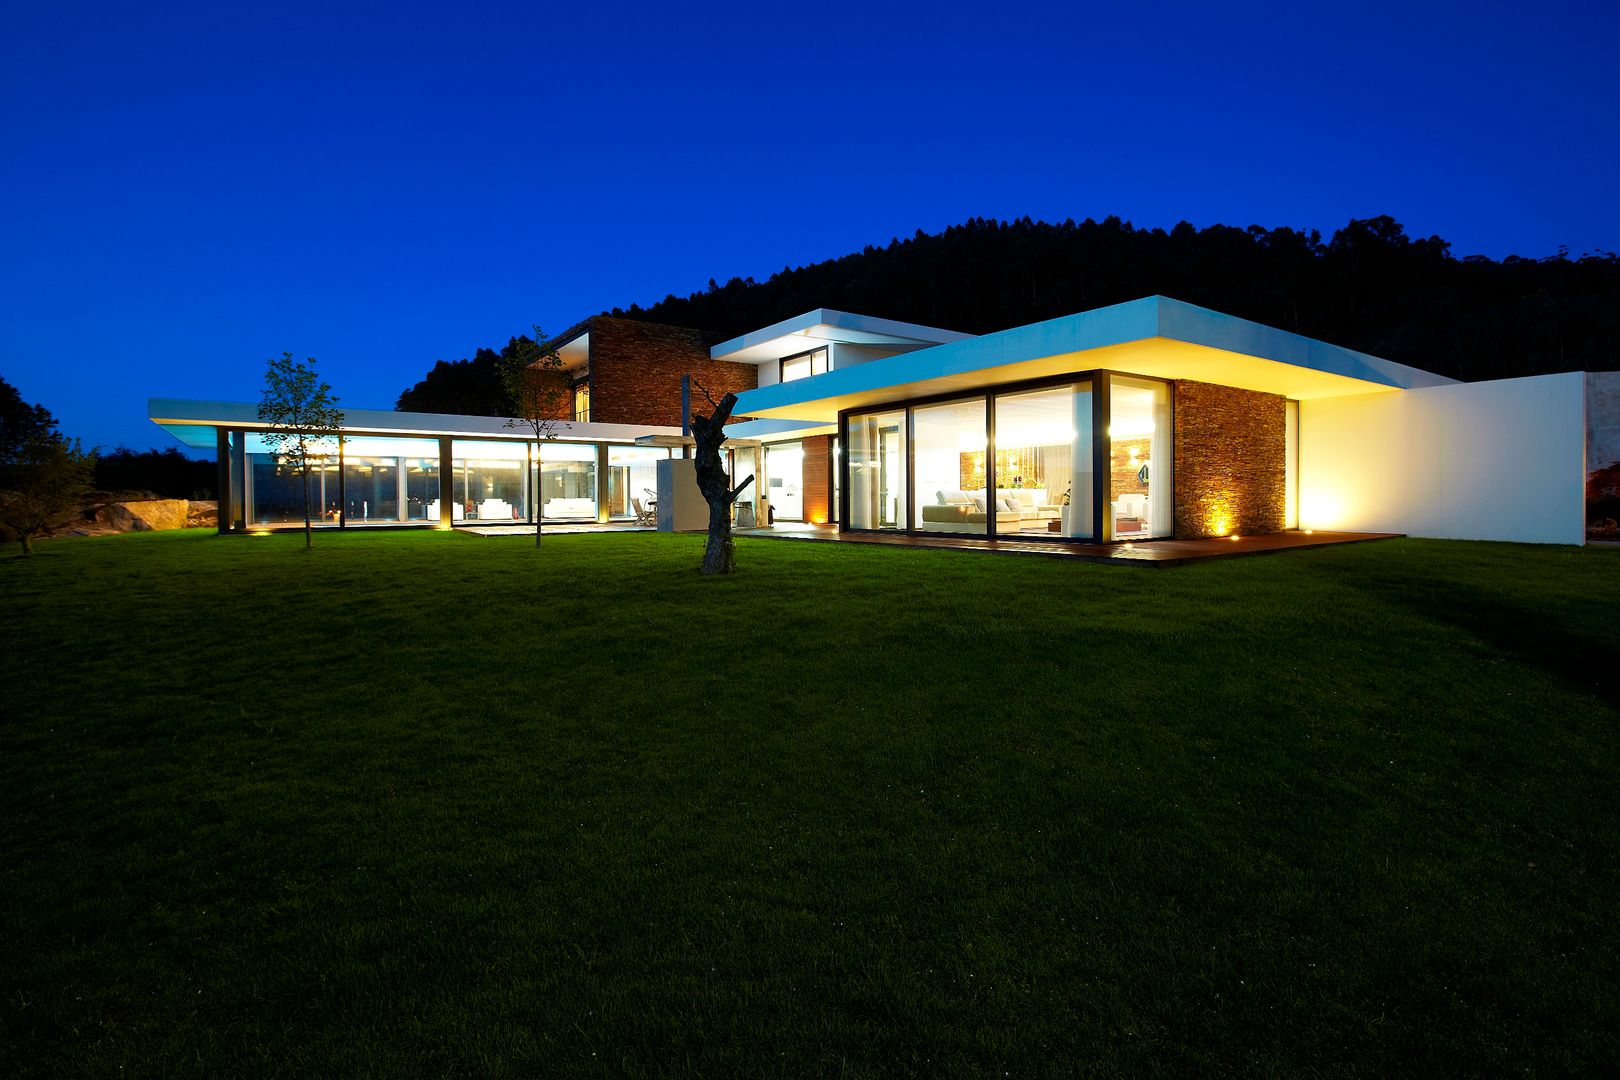 Casa moderna de dimensões generosas e piscina interior, Risco Singular - Arquitectura Lda Risco Singular - Arquitectura Lda منازل